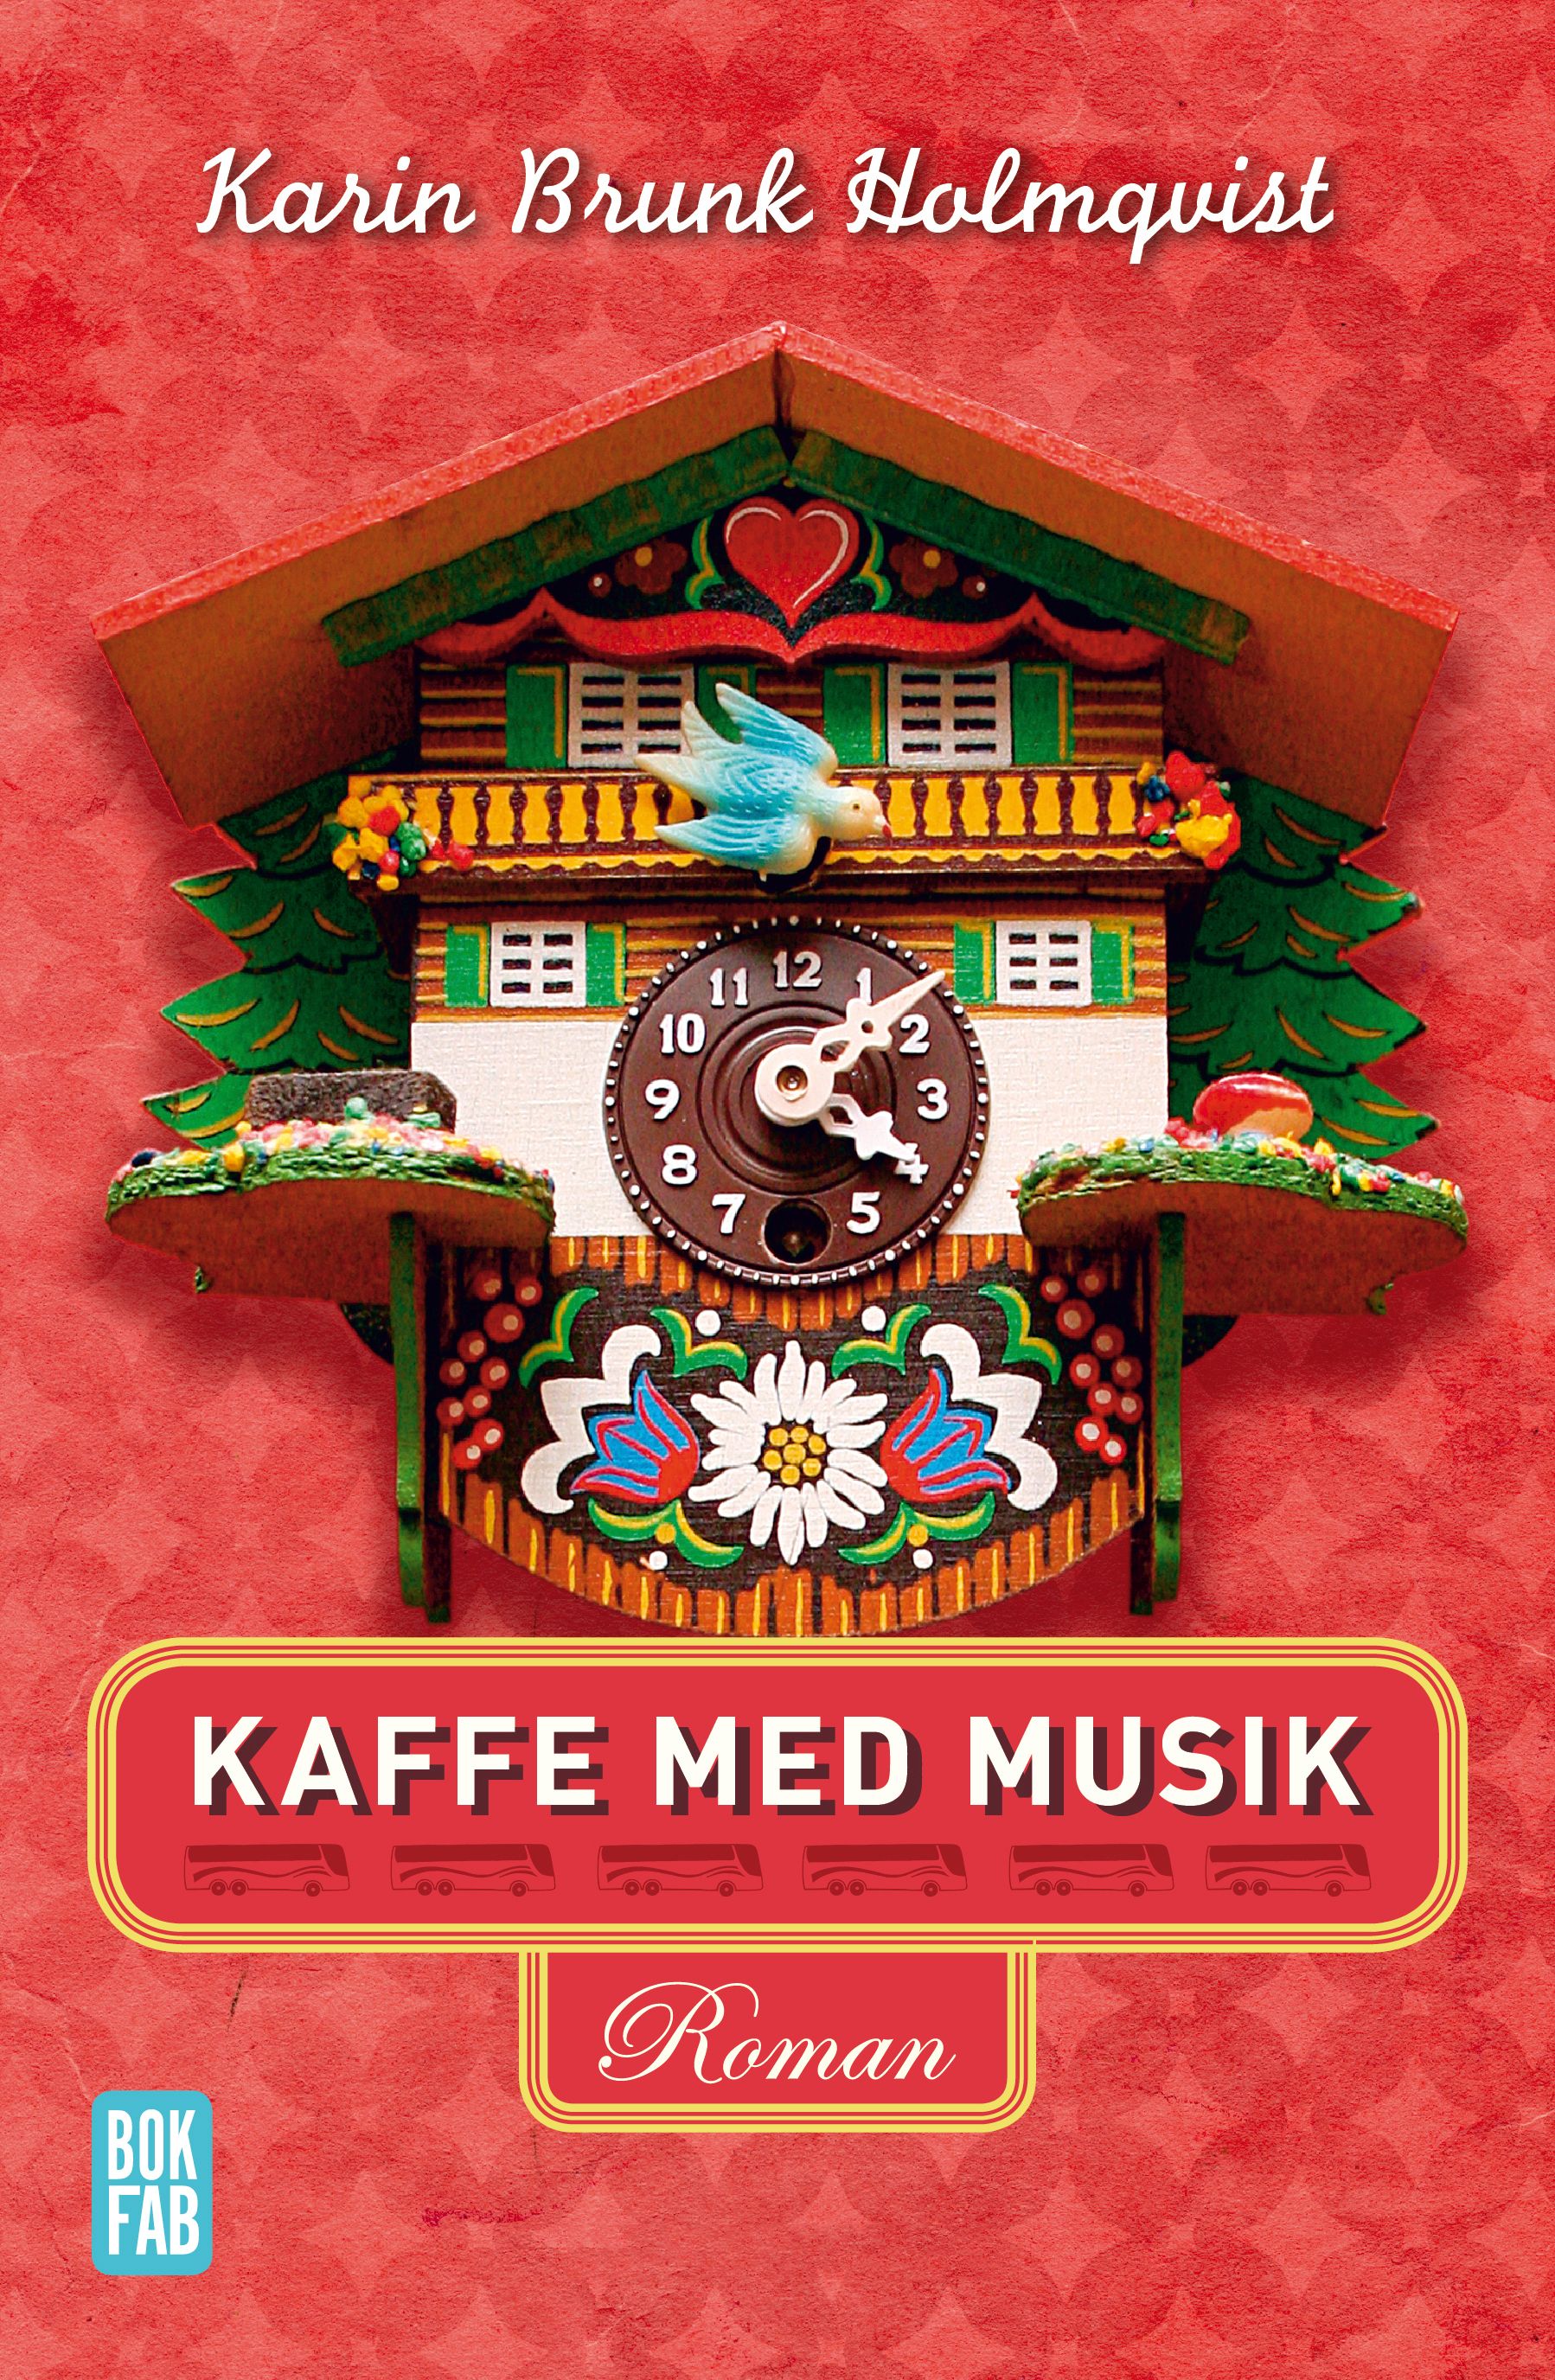 Kaffe med musik, e-bok av Karin Brunk Holmqvist